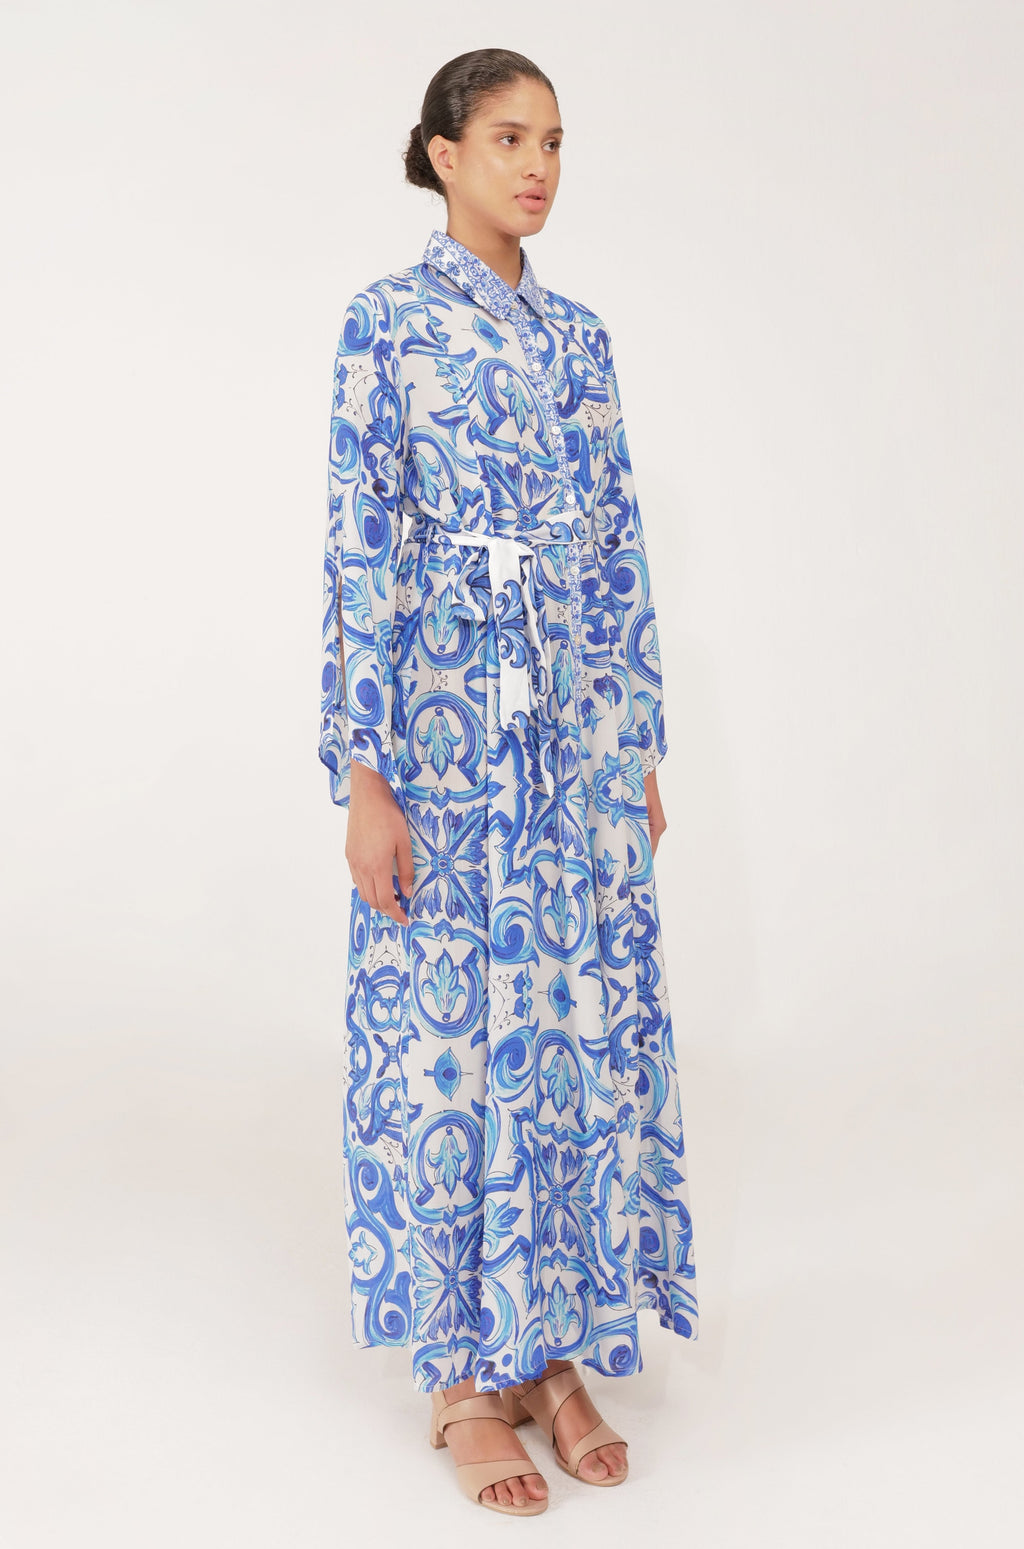 Inoa Fashion Dress MAHONIA Silk Maxi Venzia Print Blue & White